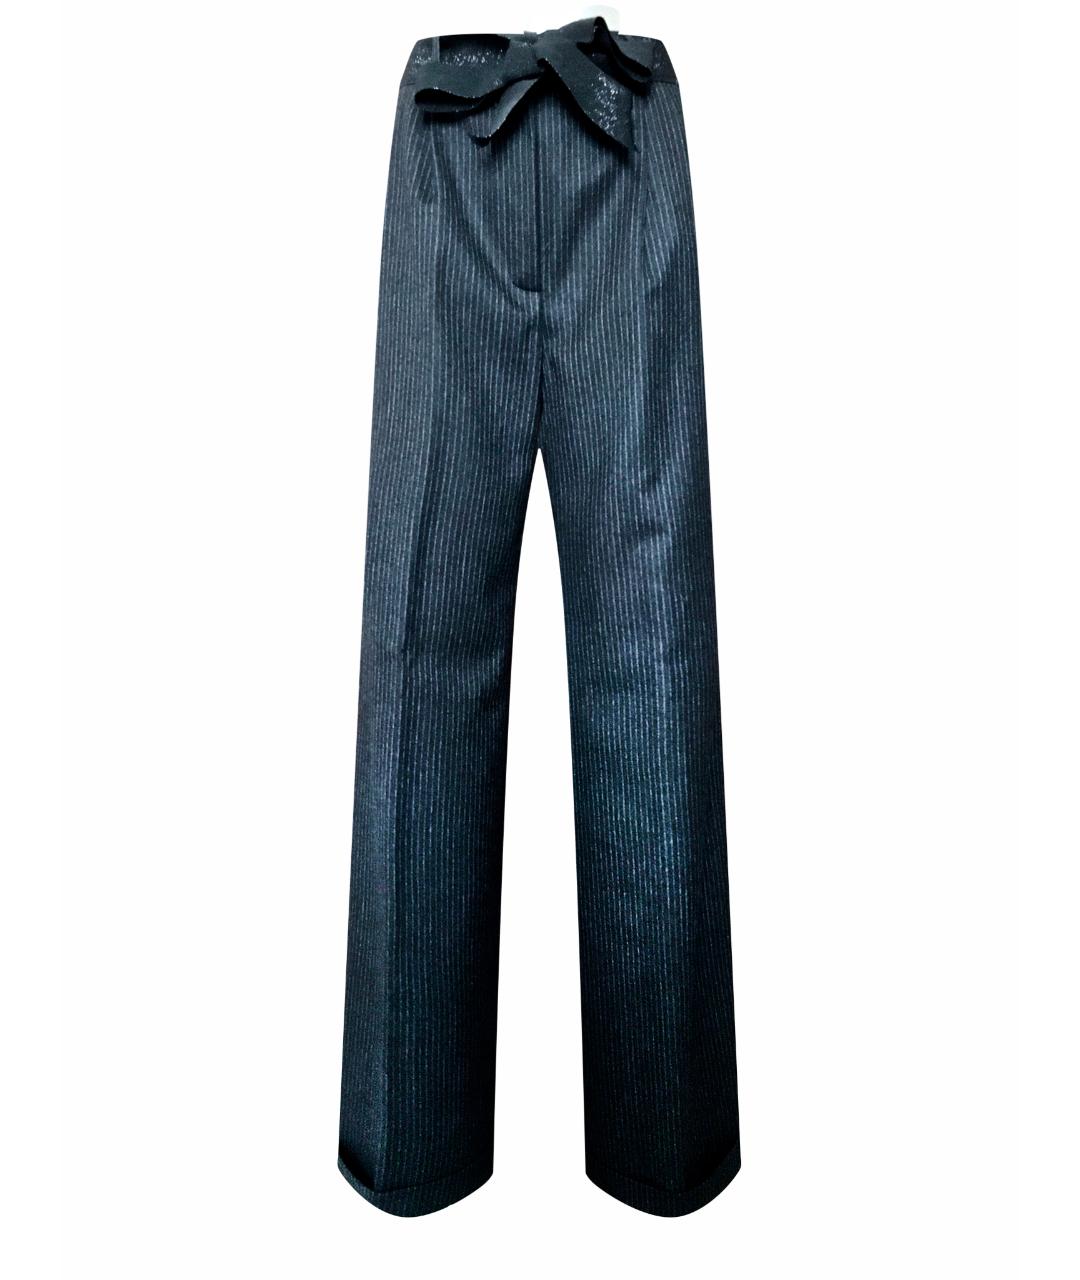 BILANCIONI Черные шерстяные брюки широкие, фото 1